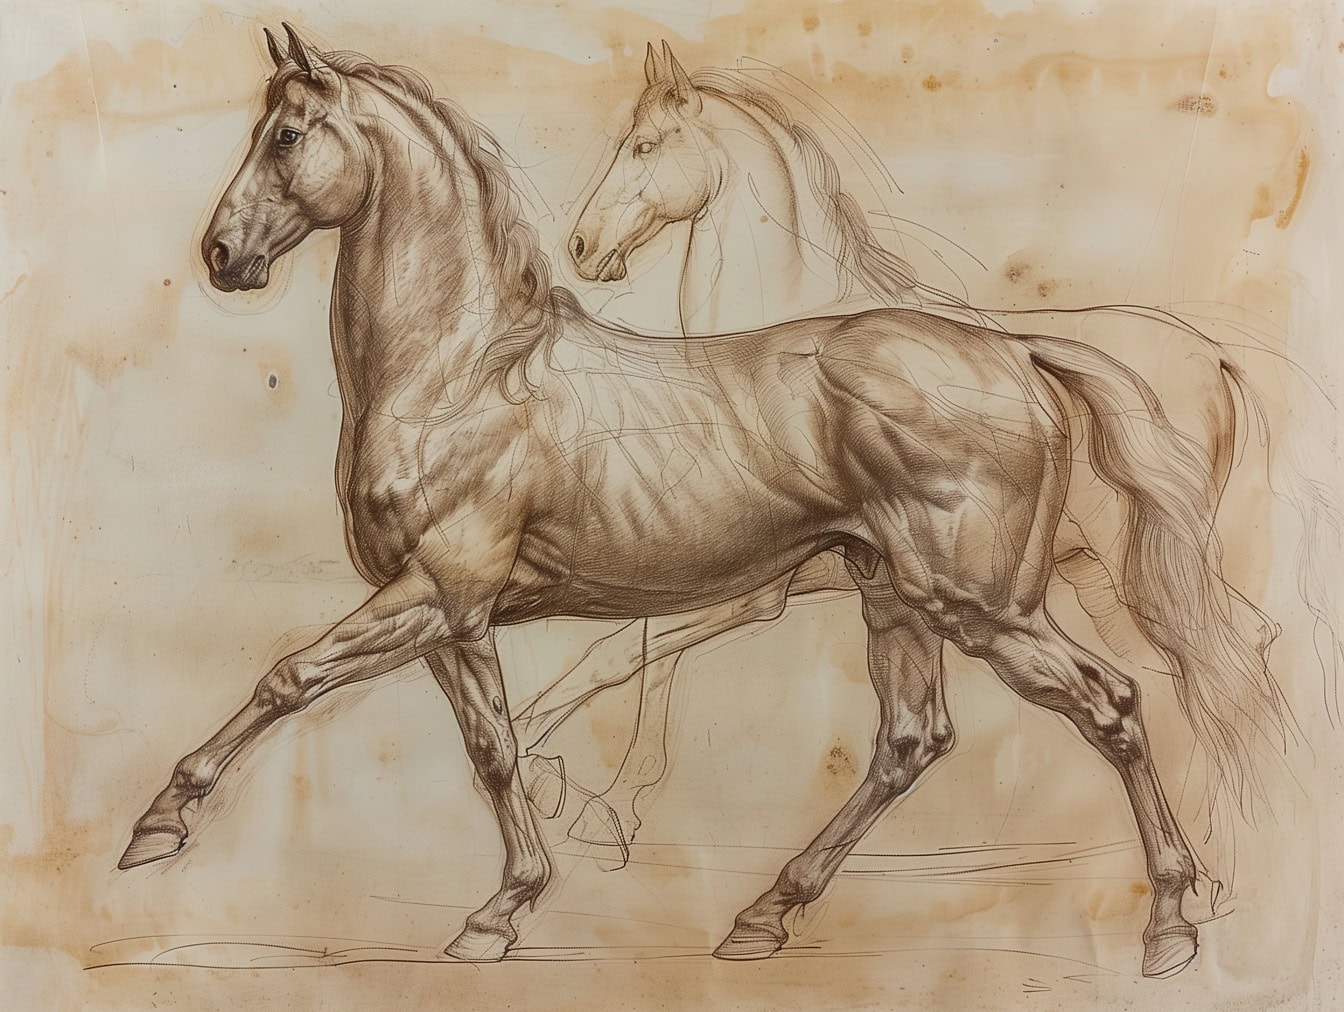 Рисунок двух лошадей на старой бумаге, жеребец впереди закончен, а лошадь на заднем плане все еще рабочий эскиз